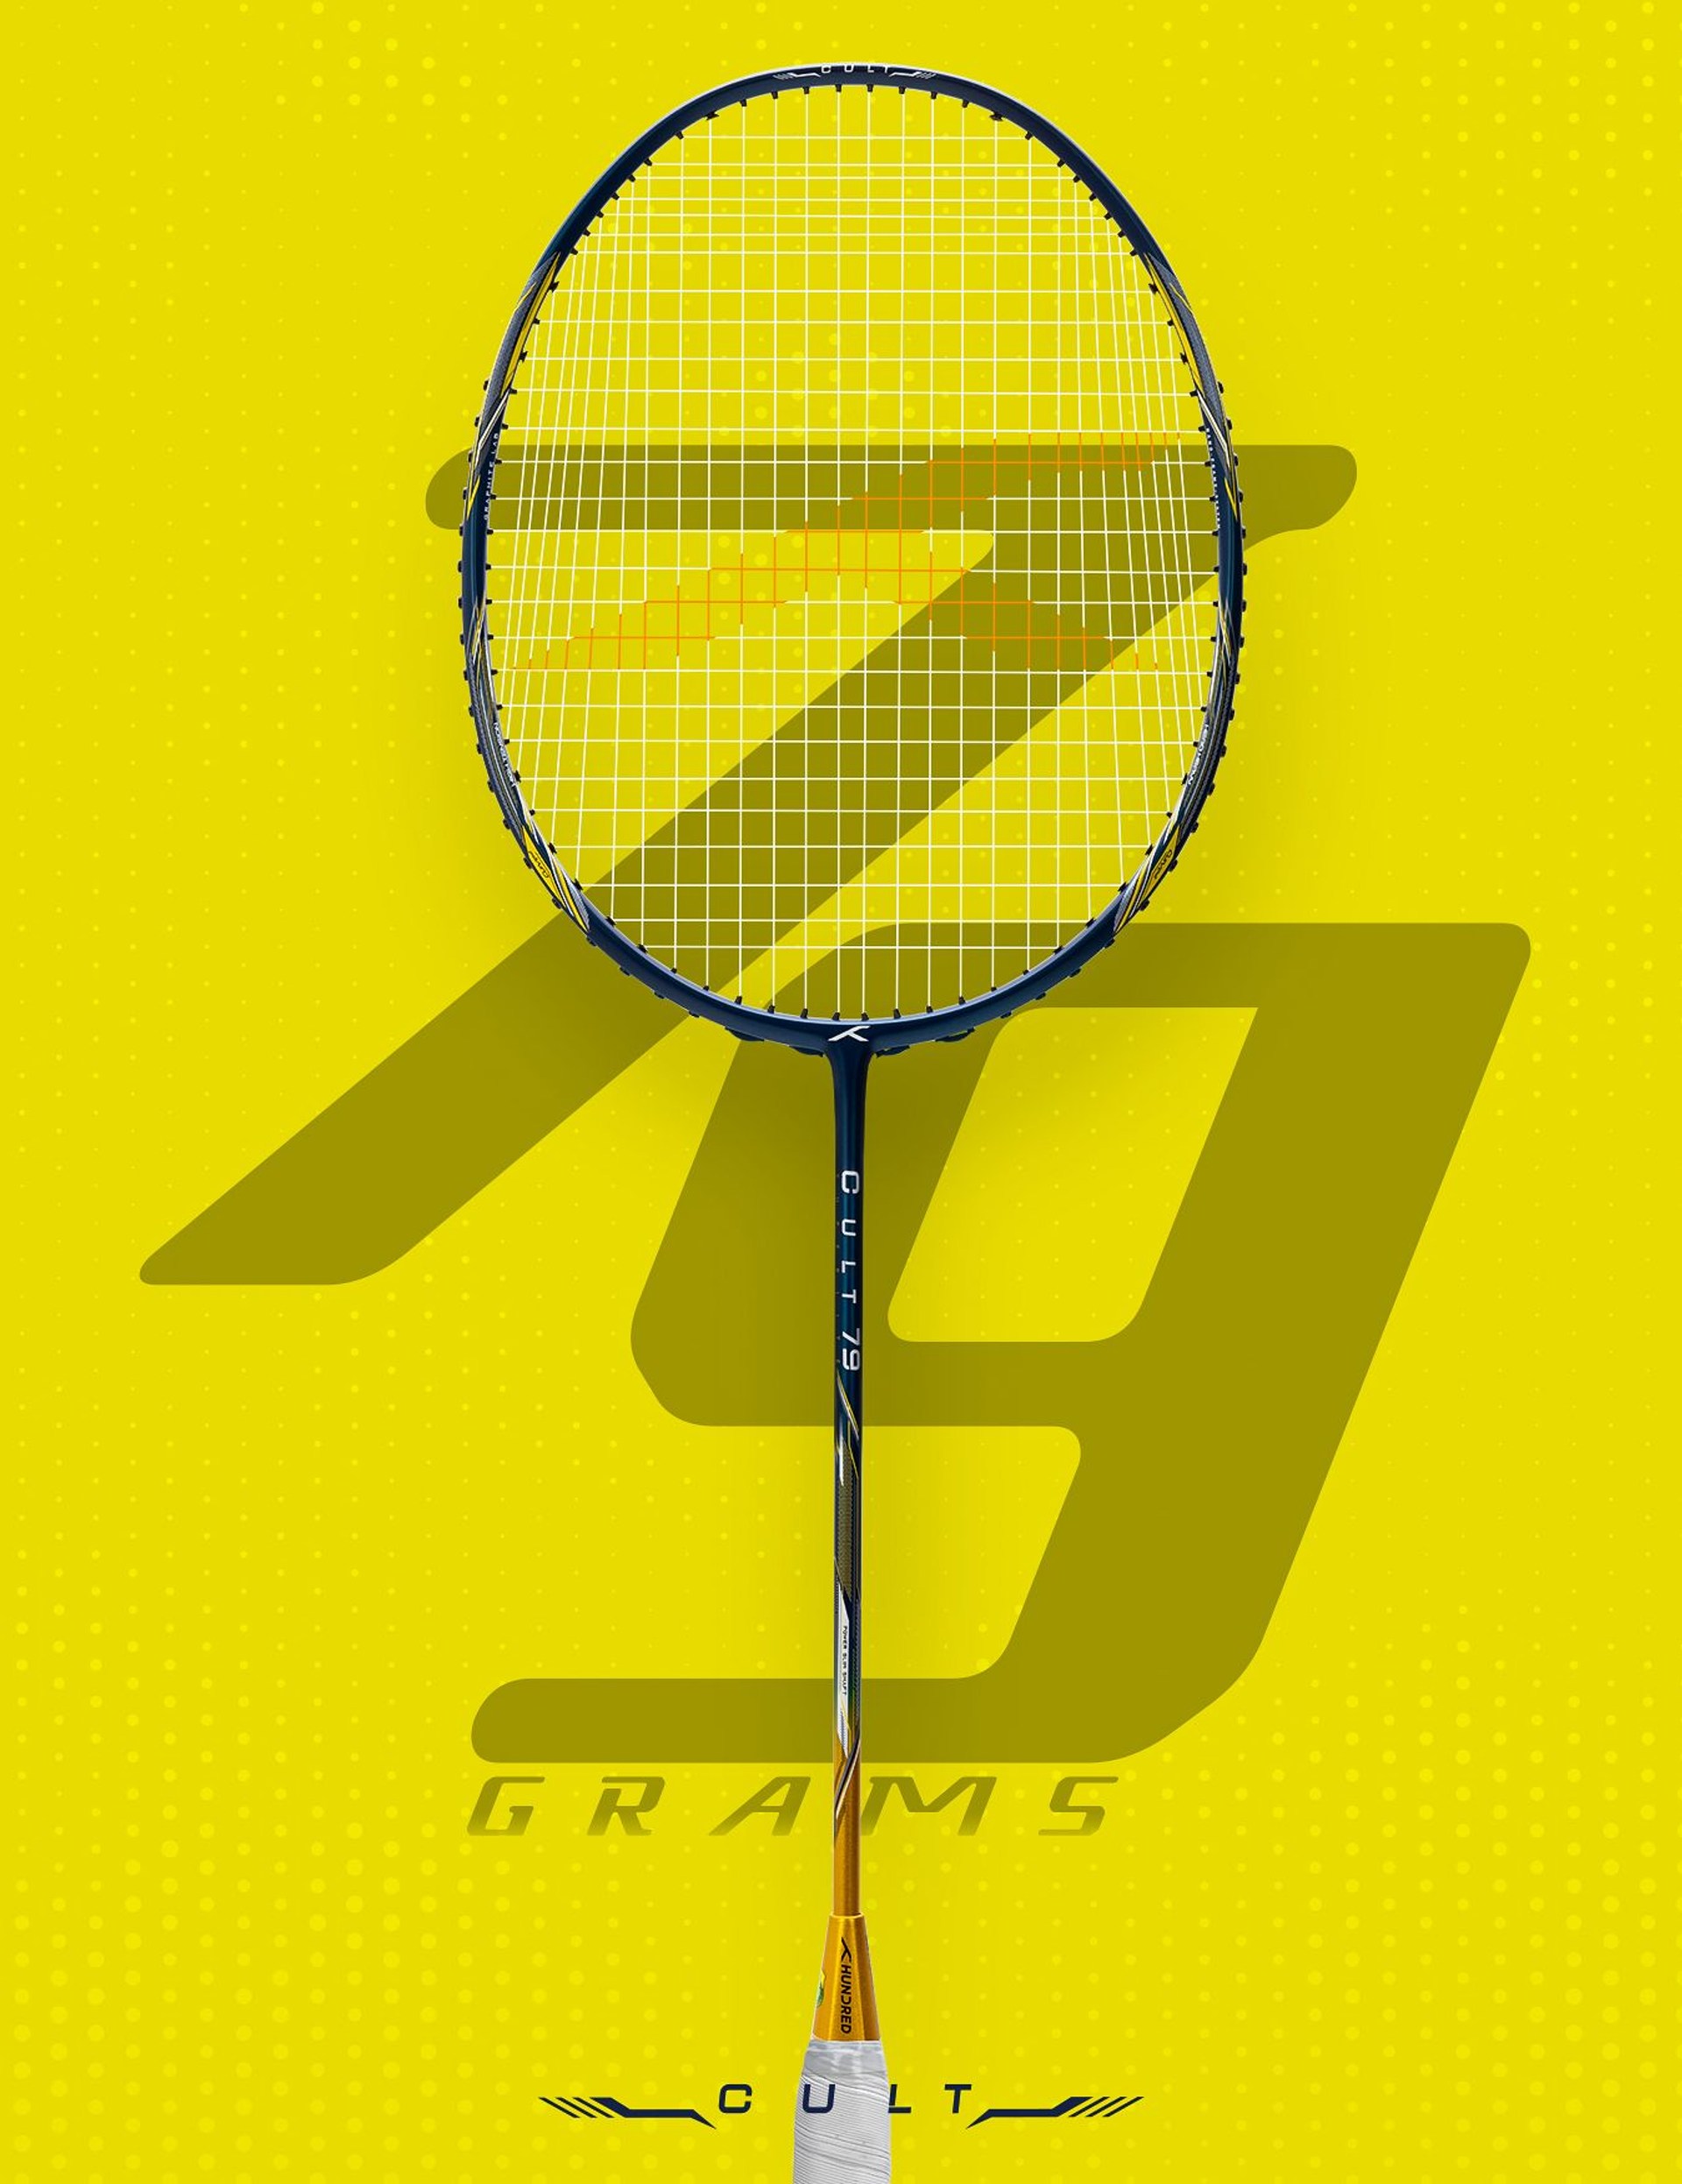 Cult Series - Badminton Racket